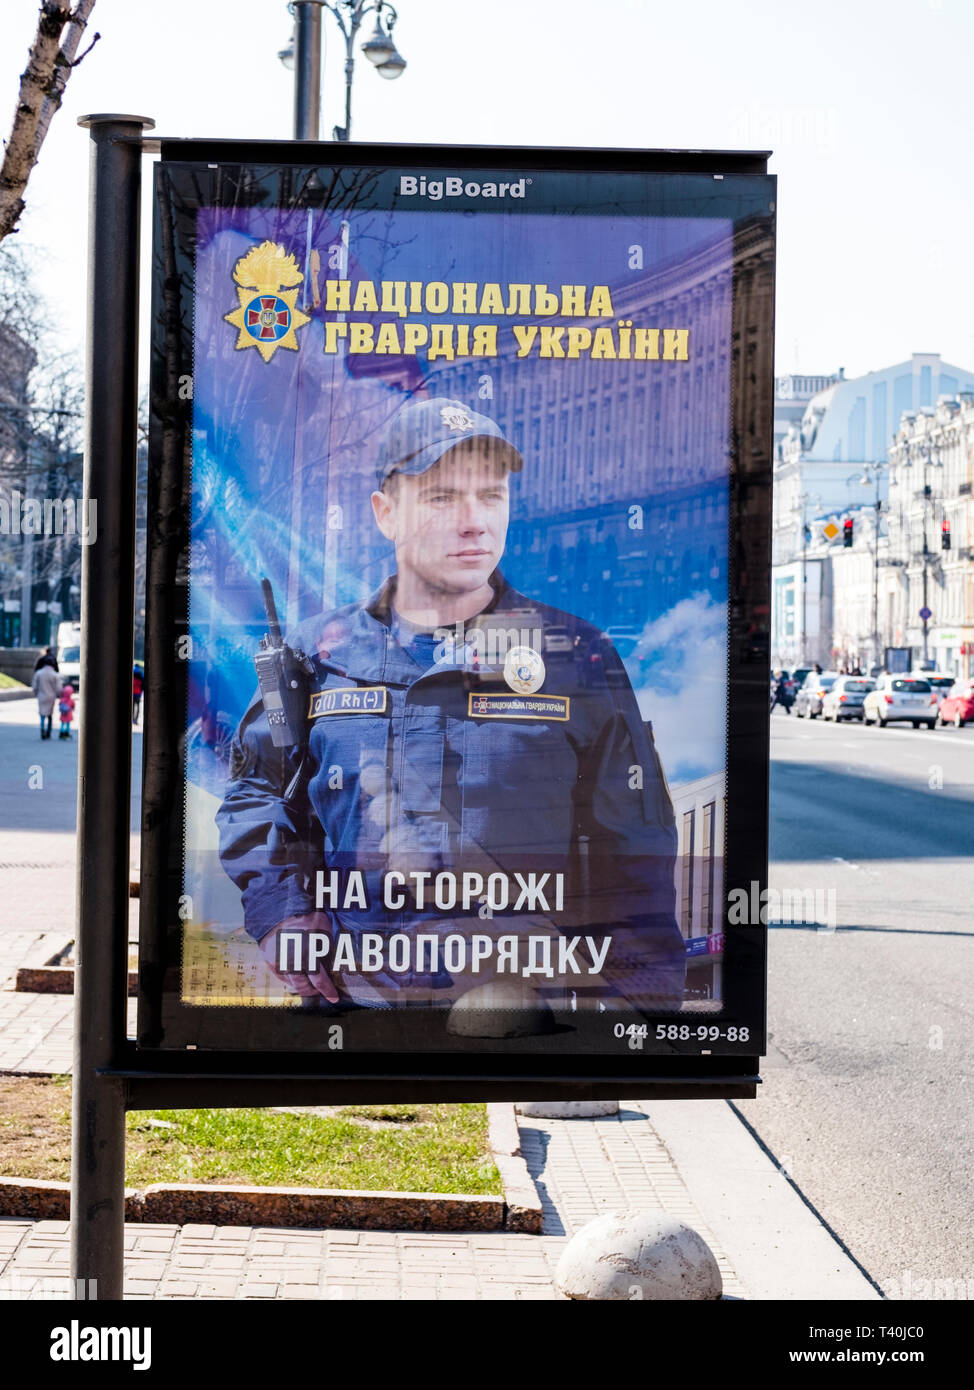 La publicidad de las fuerzas de seguridad en Kiev, Ucrania, 2019. Ucrania ha estado en un conflicto armado con los separatistas en la región de Donbass durante varios años, Foto de stock